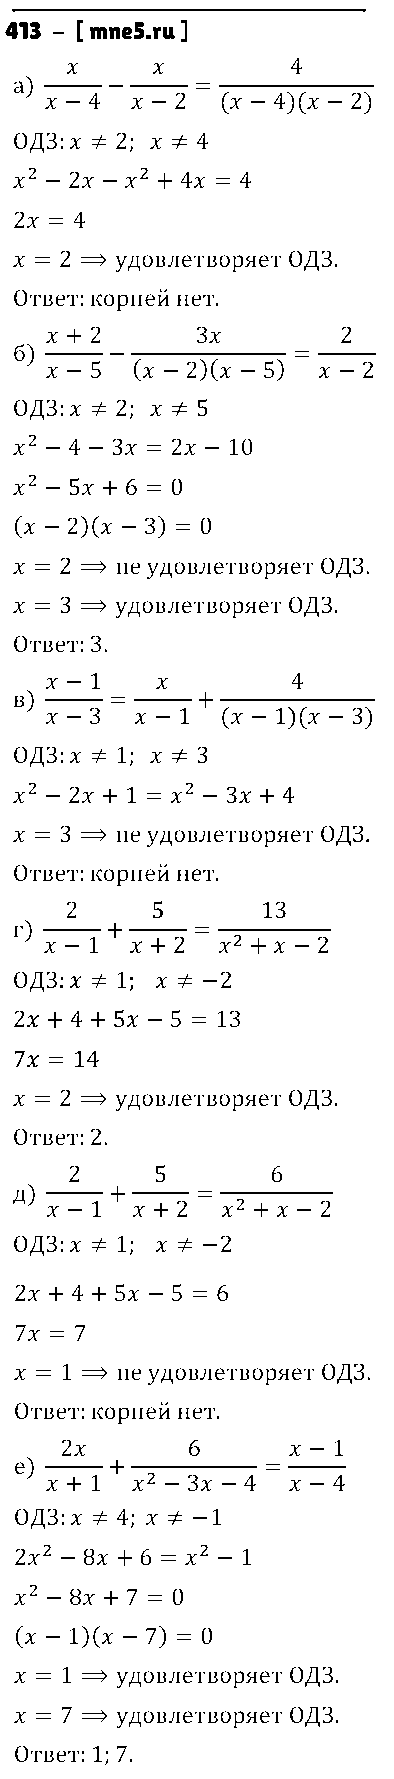 ГДЗ Алгебра 9 класс - 413